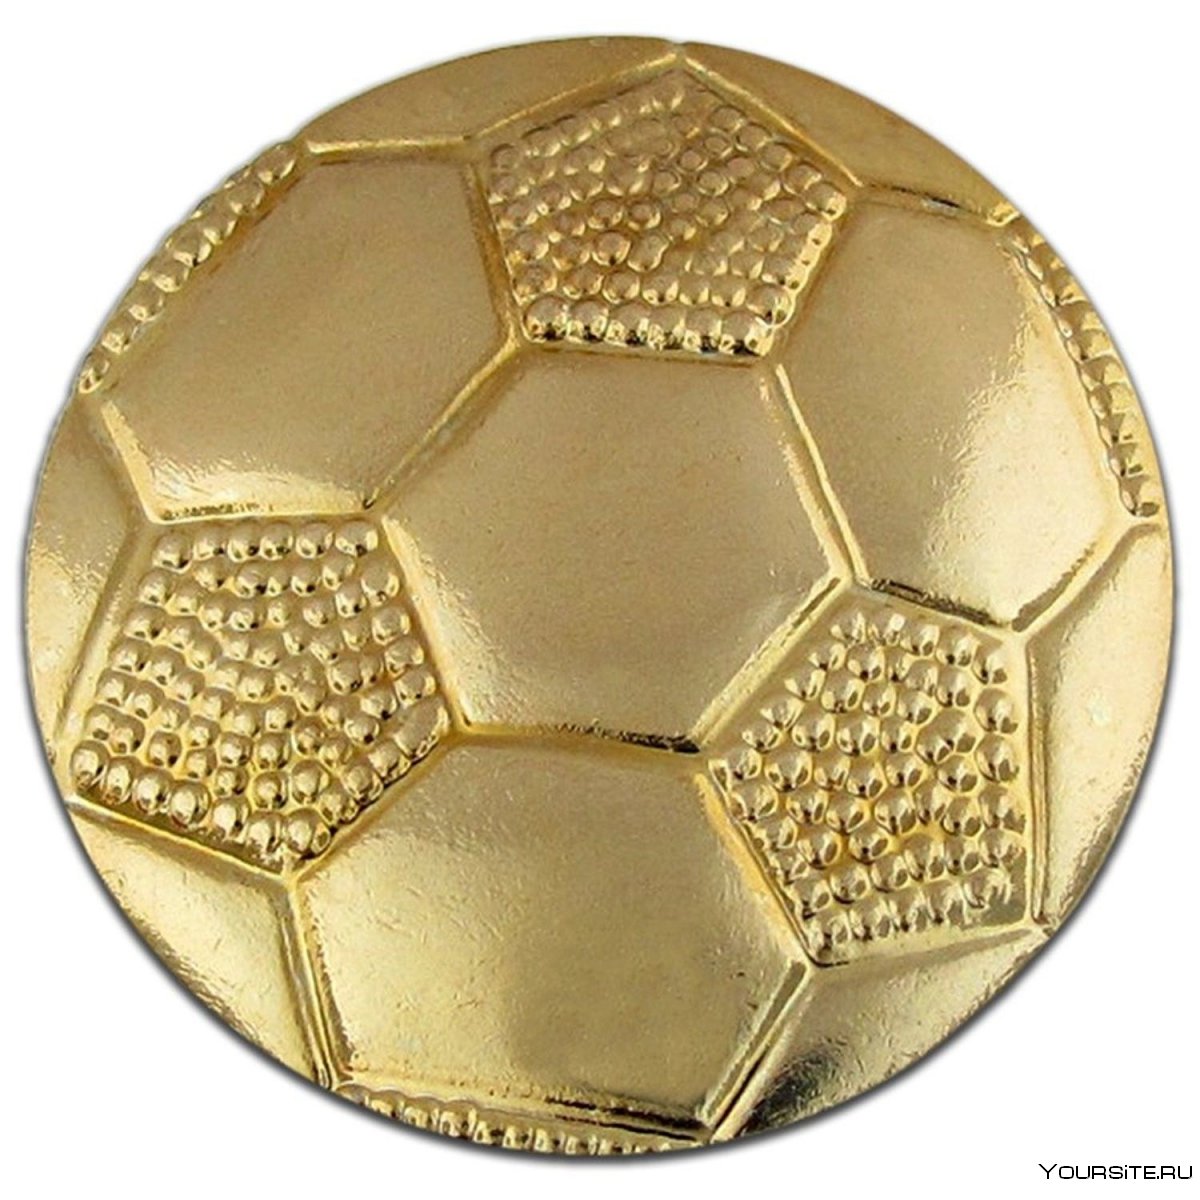 Золотой футбольный мяч